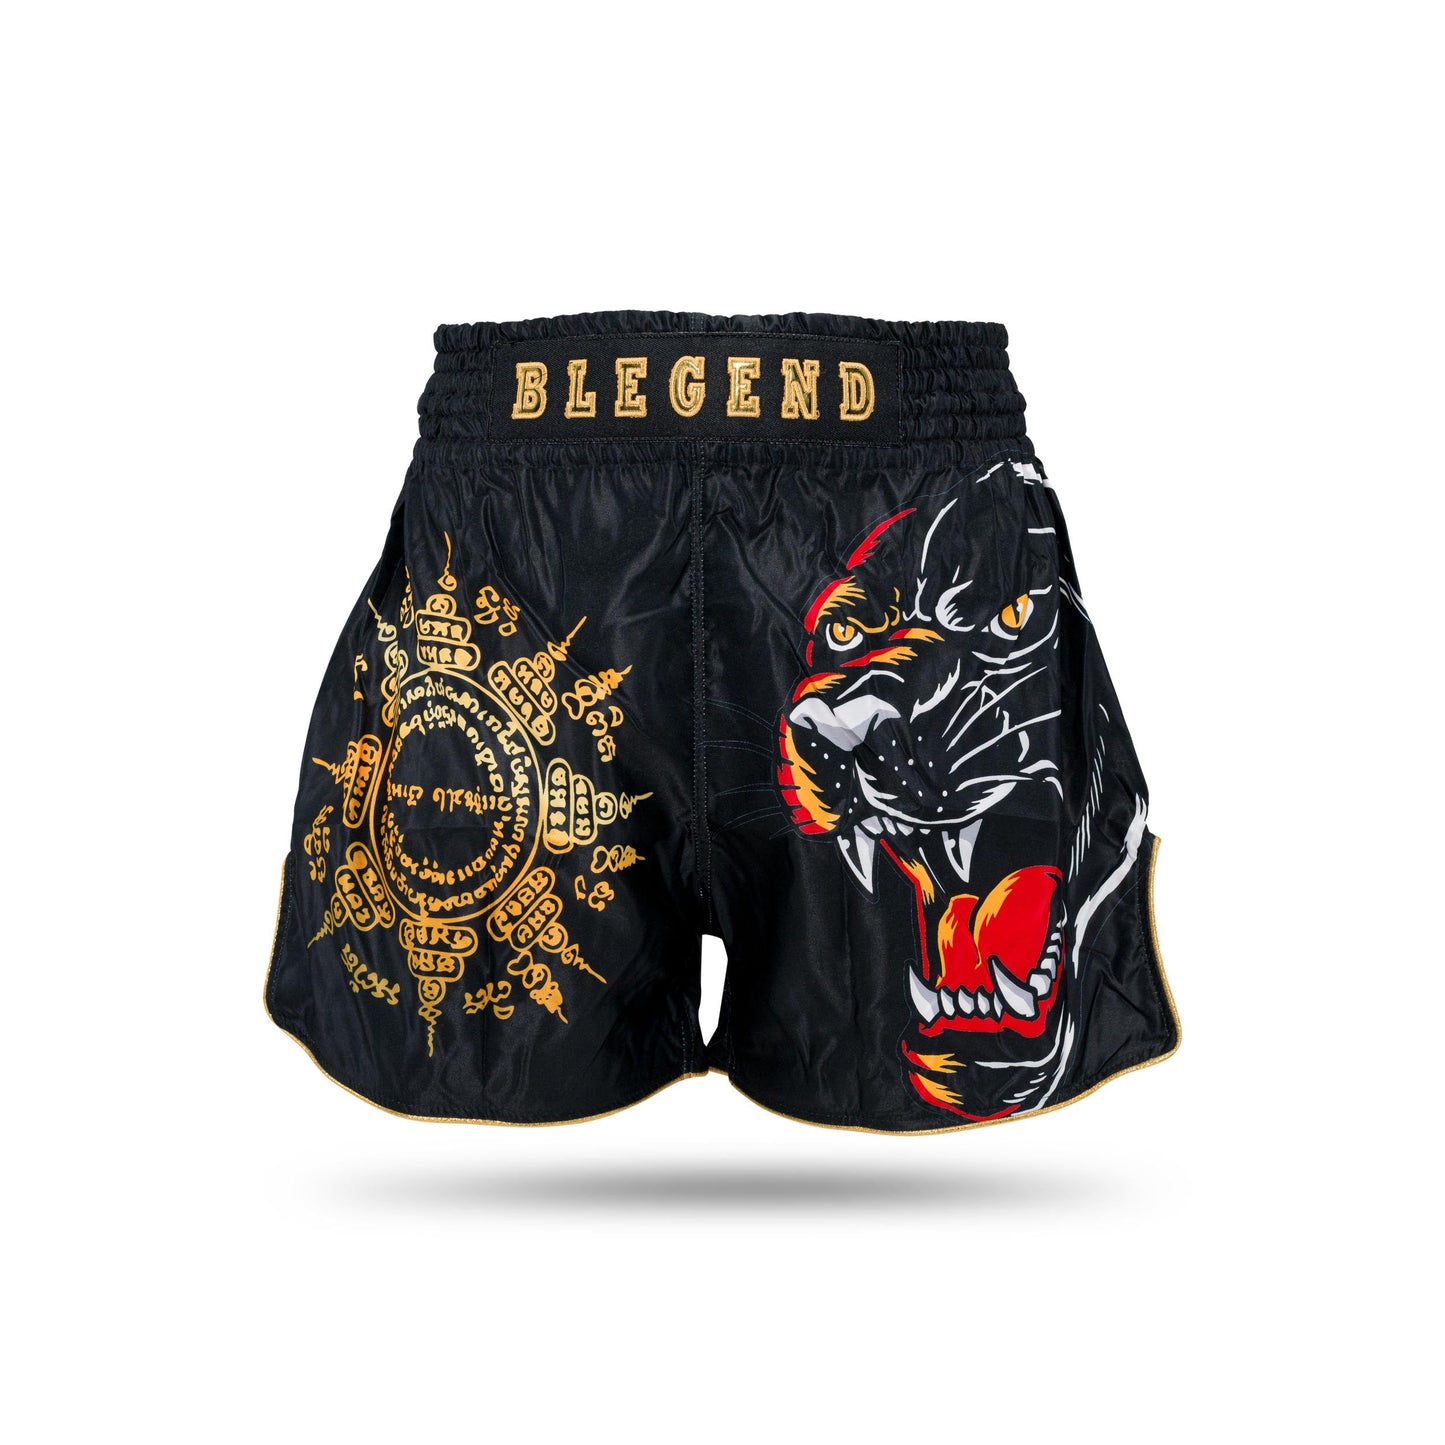 Blegend Boxing Shorts Magic Tiger